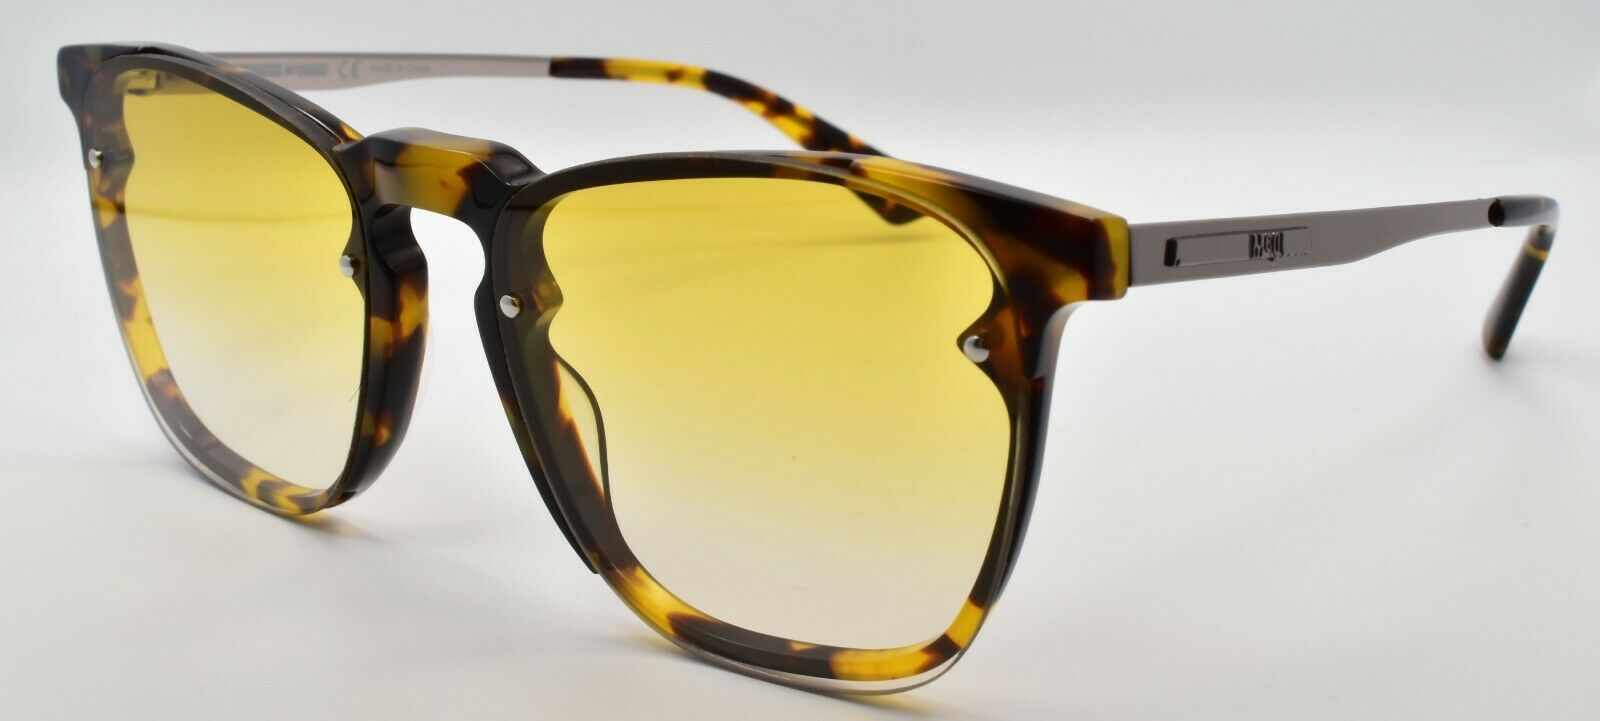 1-McQ Alexander McQueen MQ0134S 005 Unisex Sunglasses Havana / Yellow Gradient-889652145877-IKSpecs